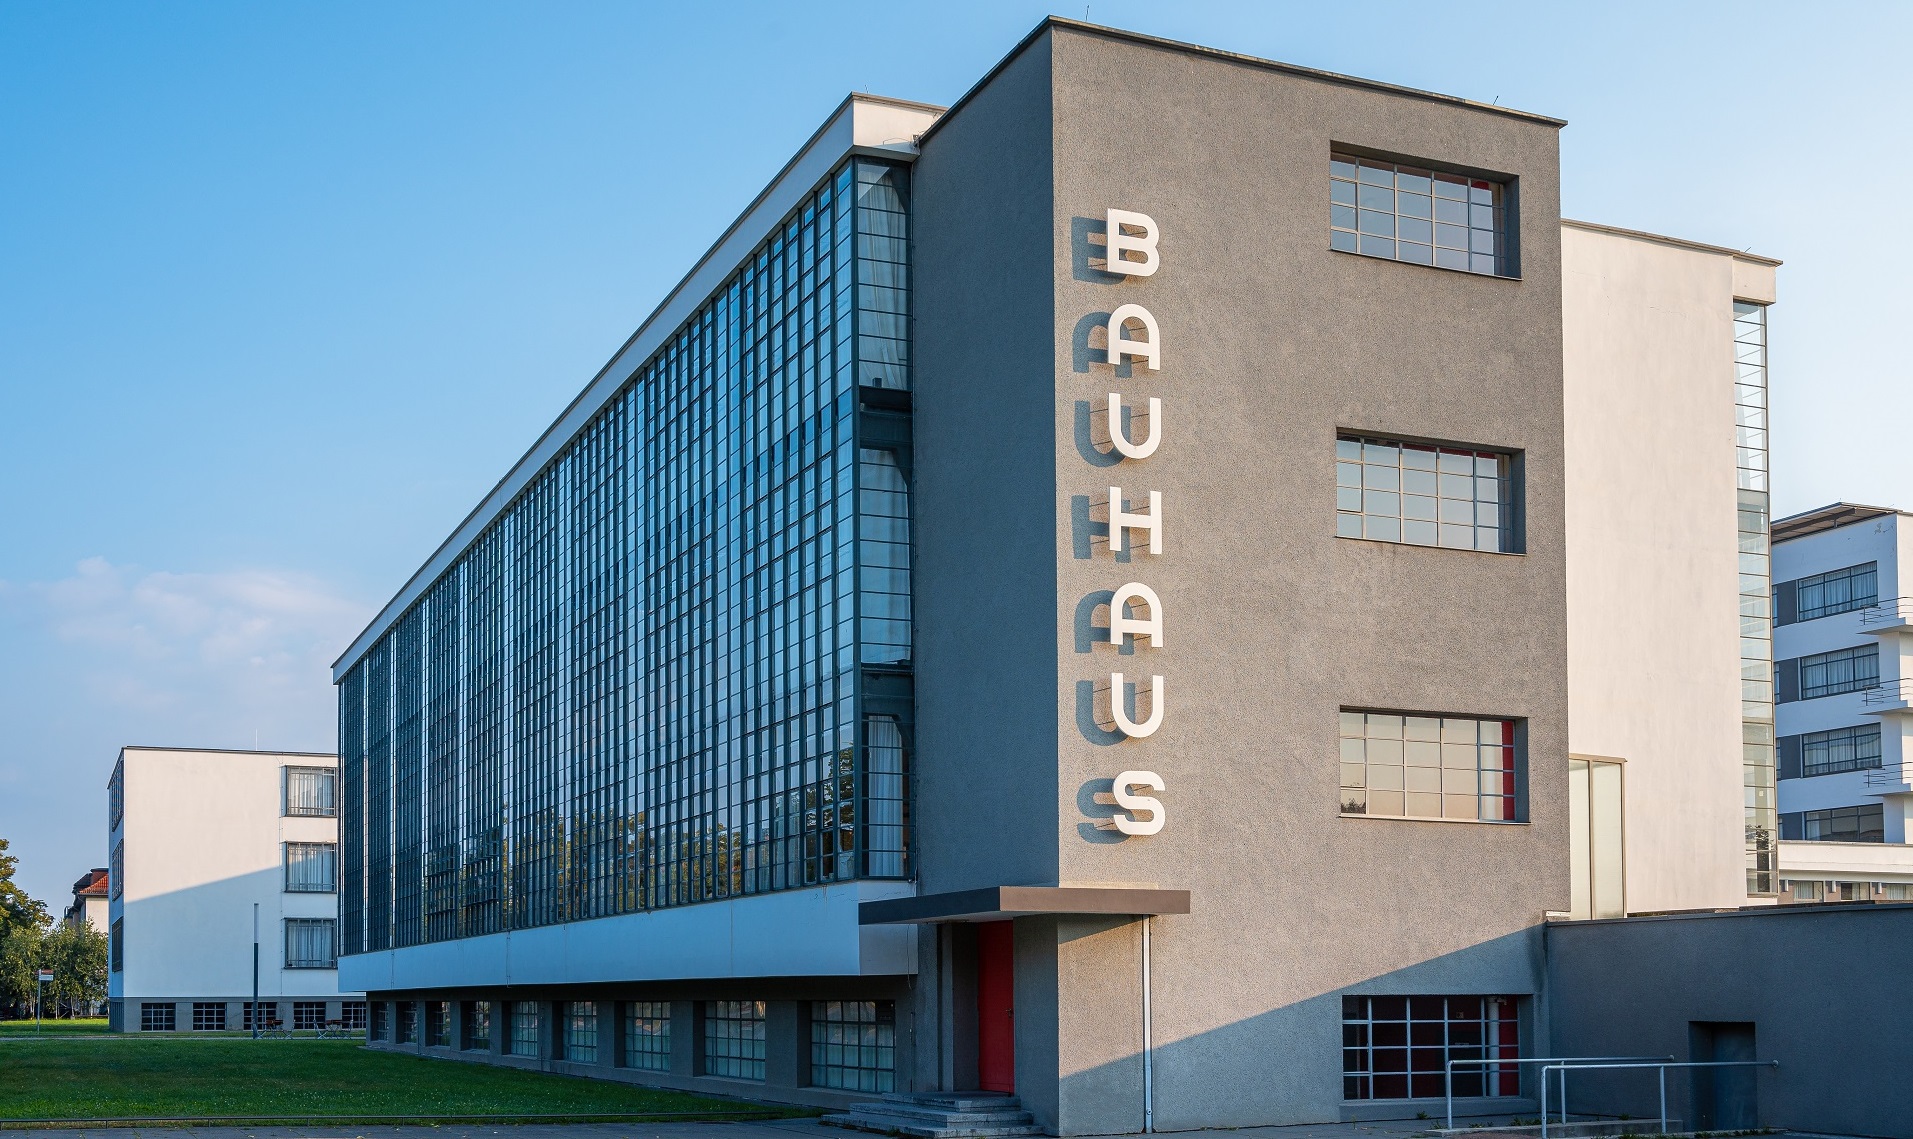 Bauhausgebäude Dessau